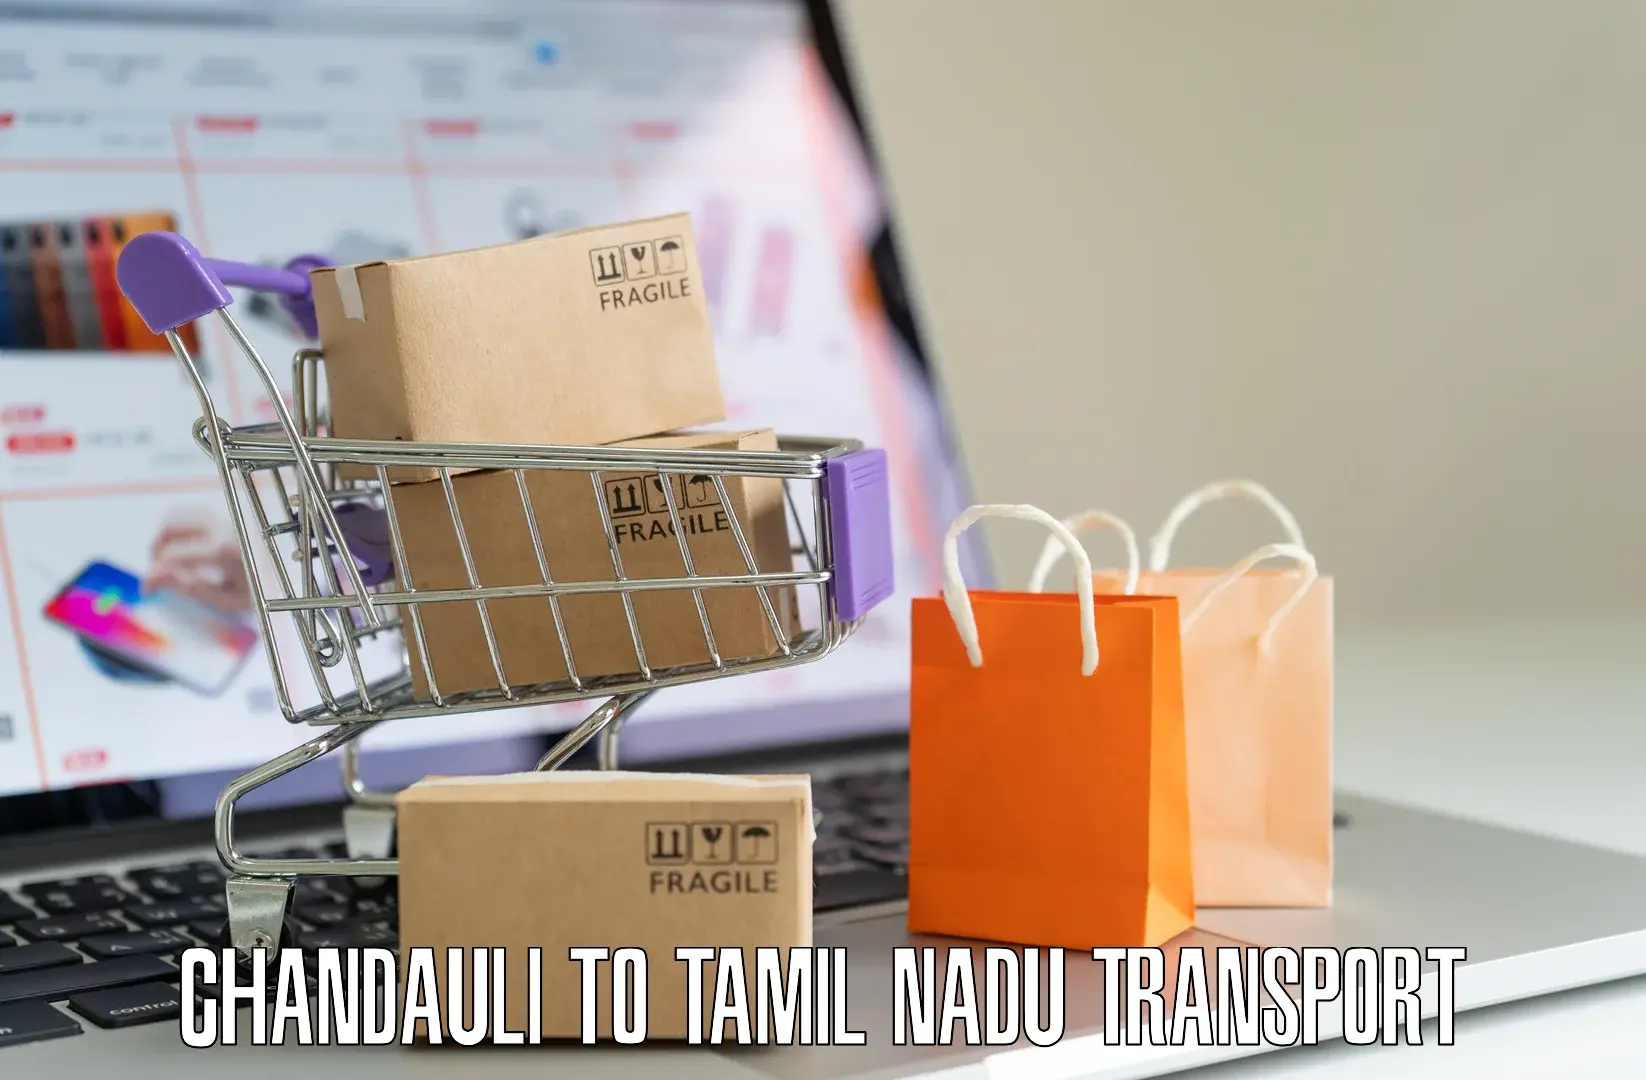 Pick up transport service Chandauli to Marthandam